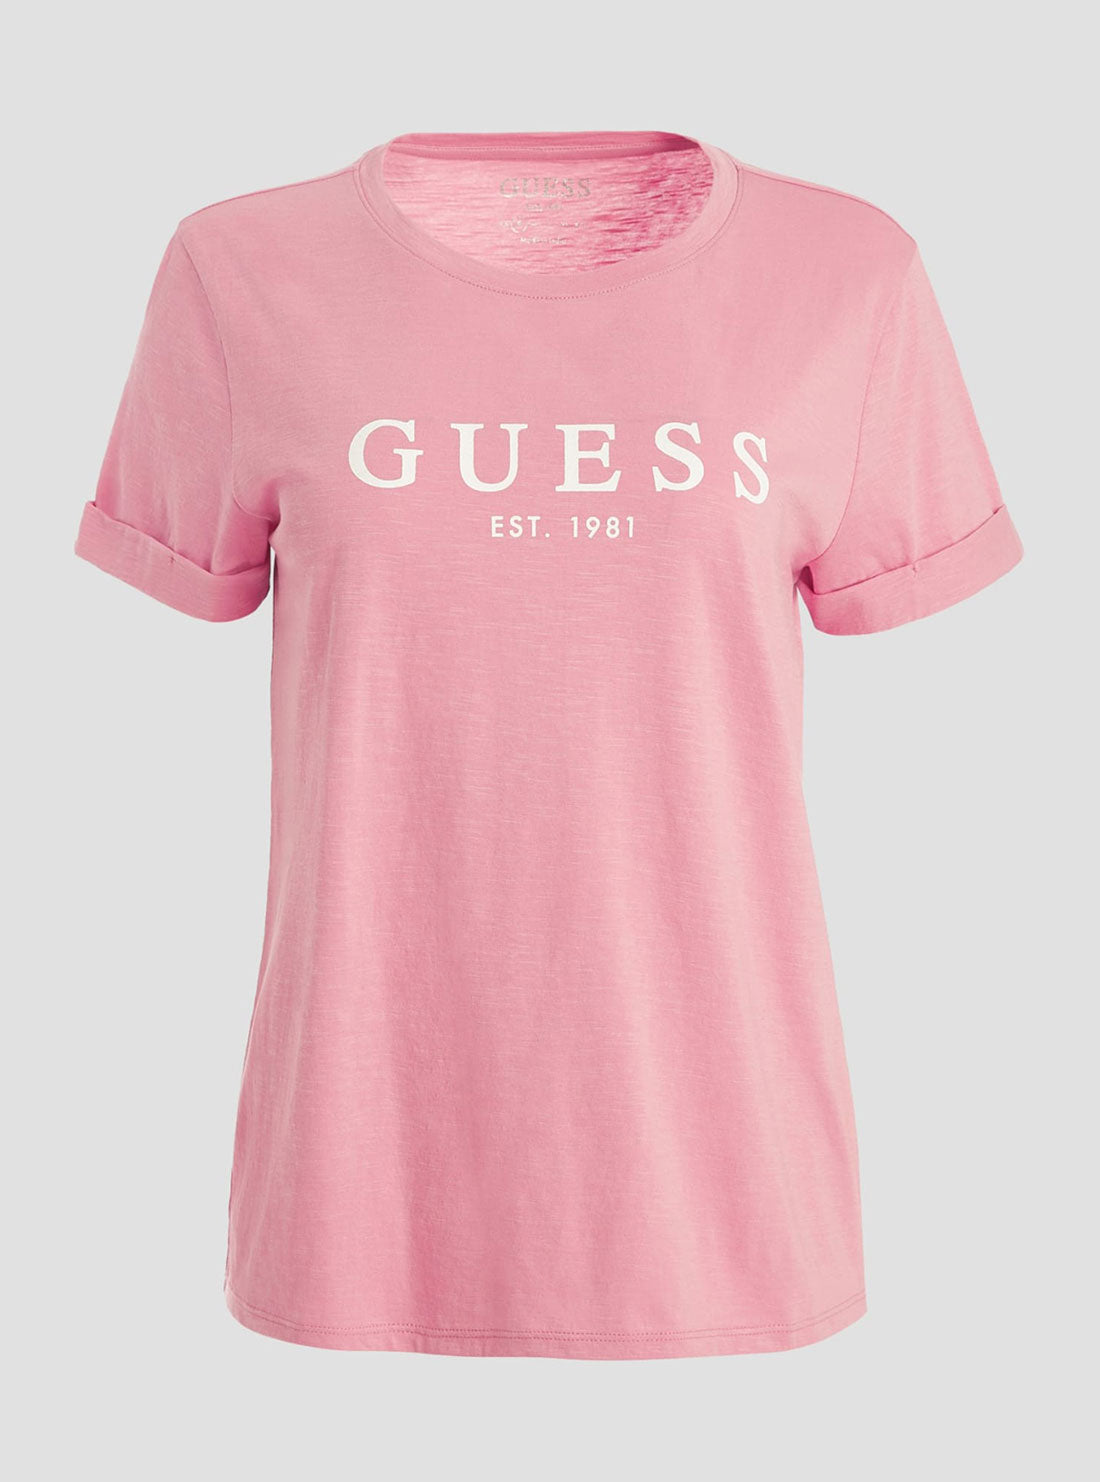 GUESS Women's Eco Pink 1981 Roll Cuff Logo T-Shirt W2BI68K8G01 Ghost View